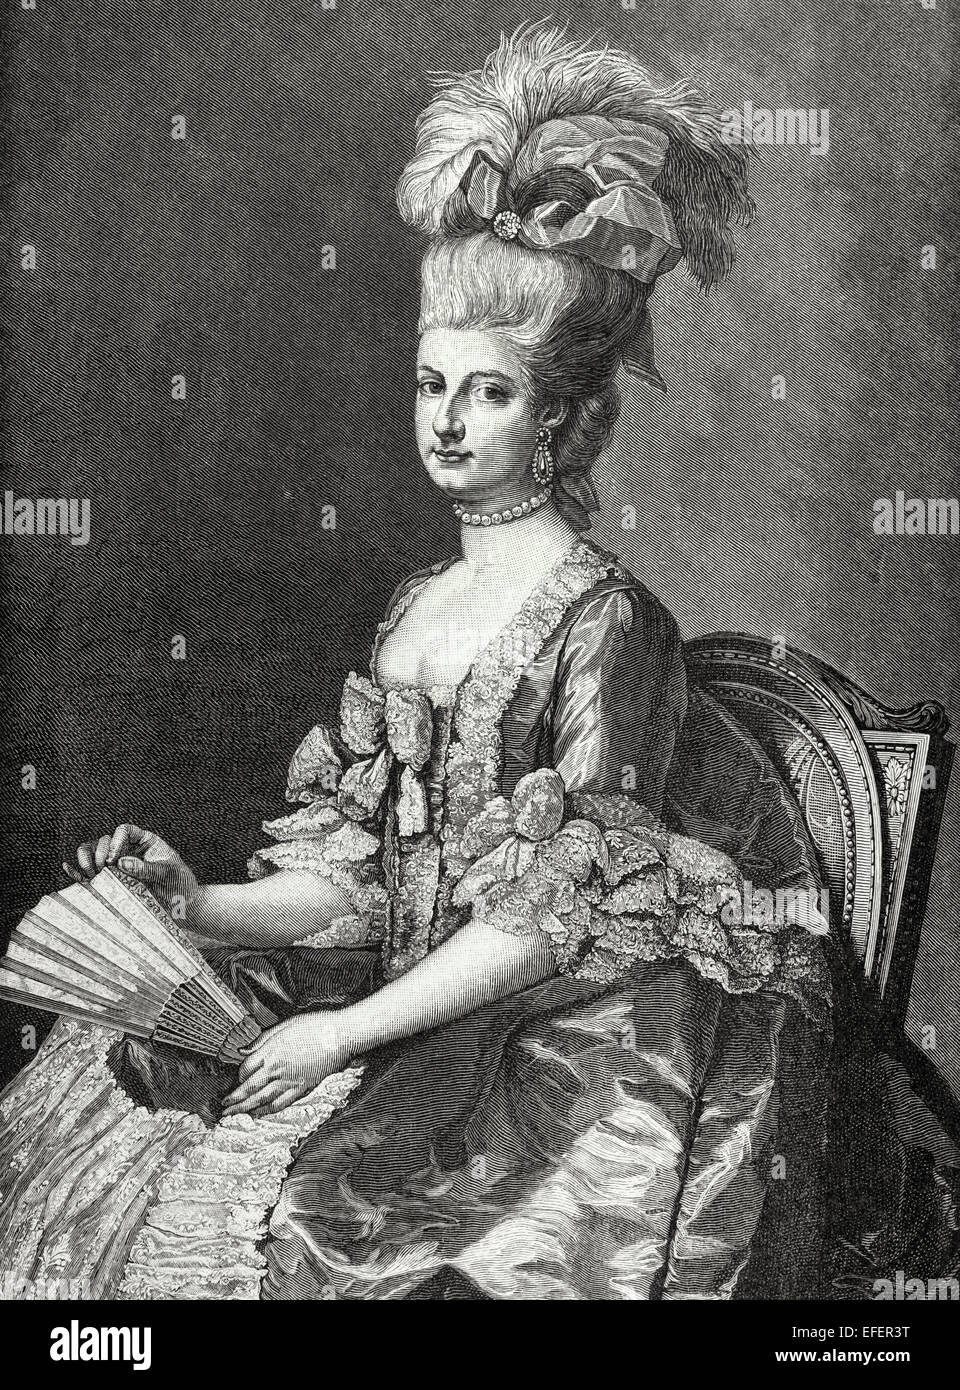 Maria Cristina, duchessa di Teschen (1742-1798), denominato "imi', era il governatore dei Paesi Bassi Austriaci dal 1781 fino al 1793. Ritratto. Incisione in "Historia universale", 1885. Foto Stock